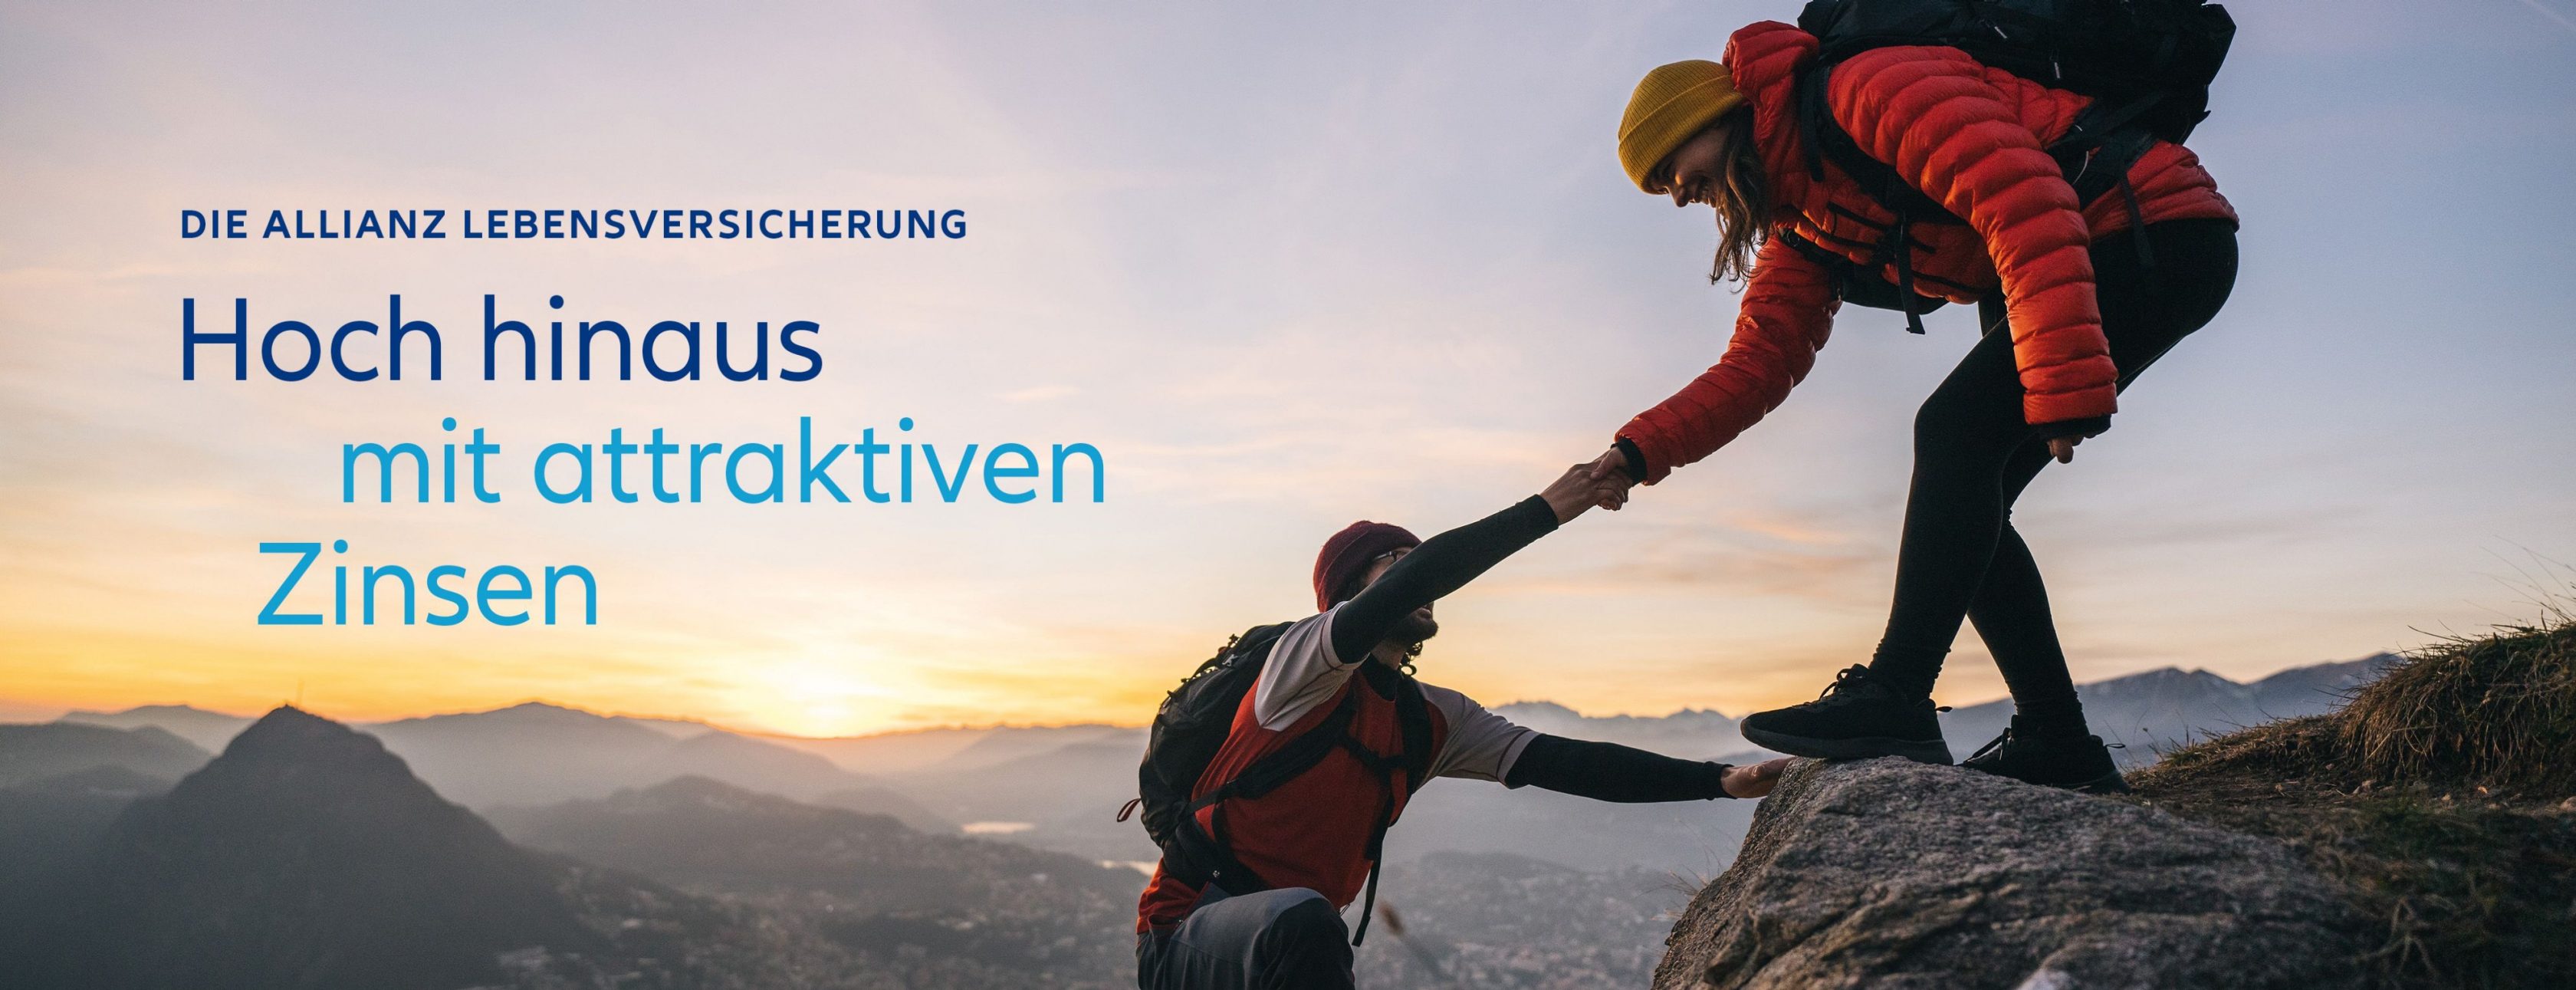 Allianz Versicherung Kevin Klock Frickenhausen - baufinanzierung anschlussfinanzierung 